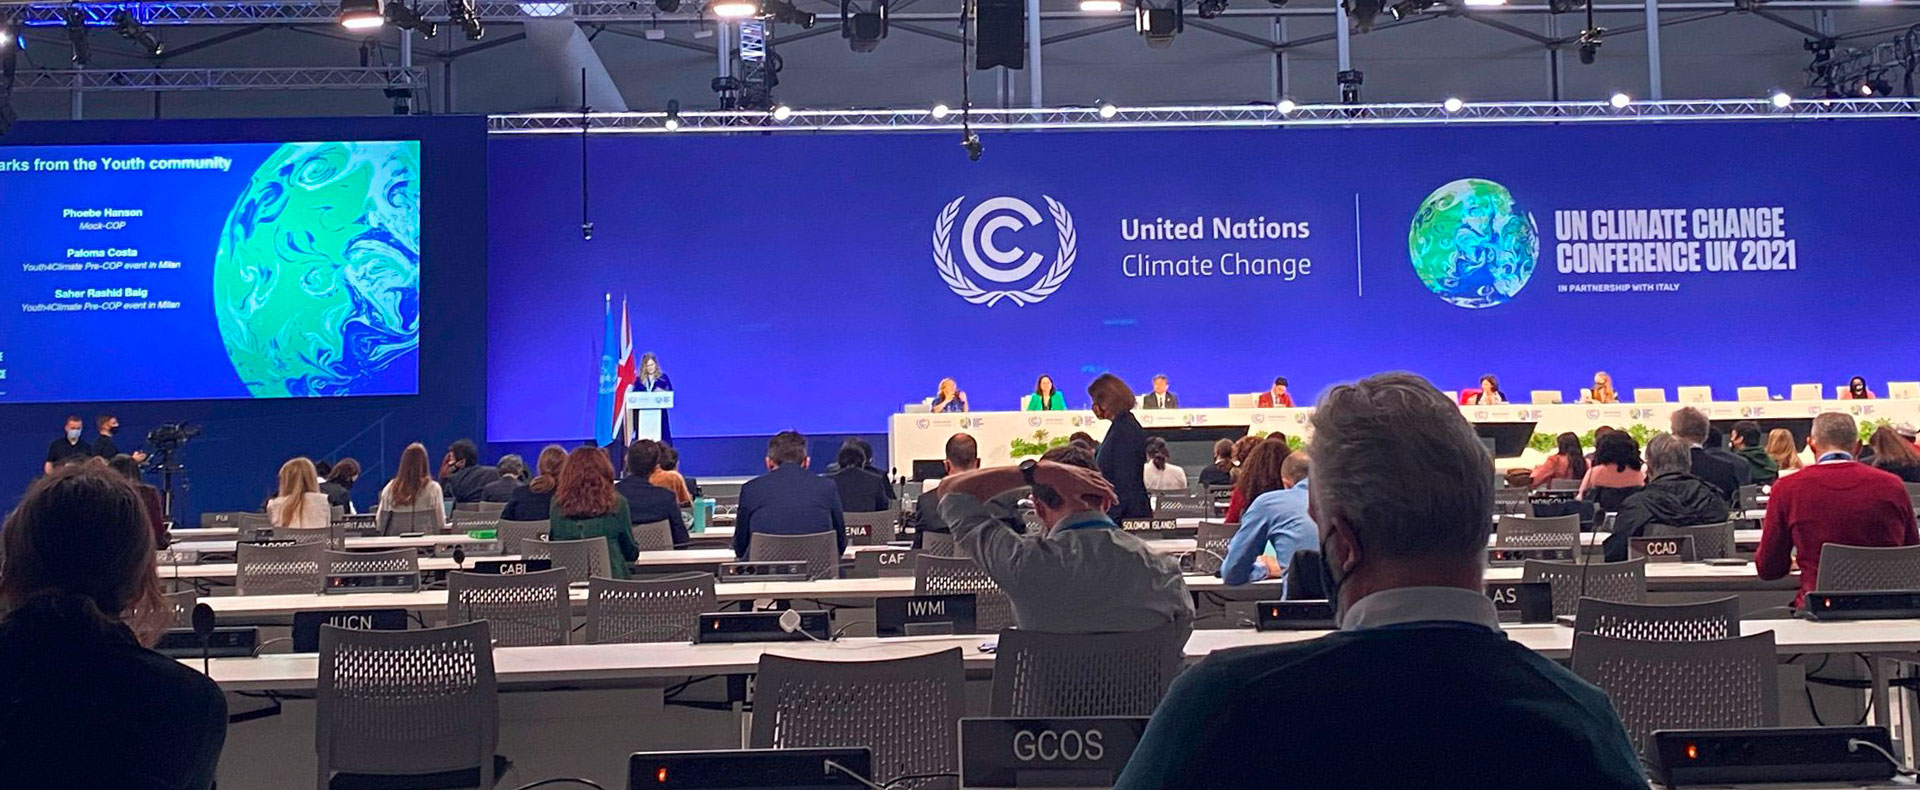 Biofílica na COP26 - Líderes mundiais discutem em painel sobre a importância de jovens no combate às mudanças climáticas